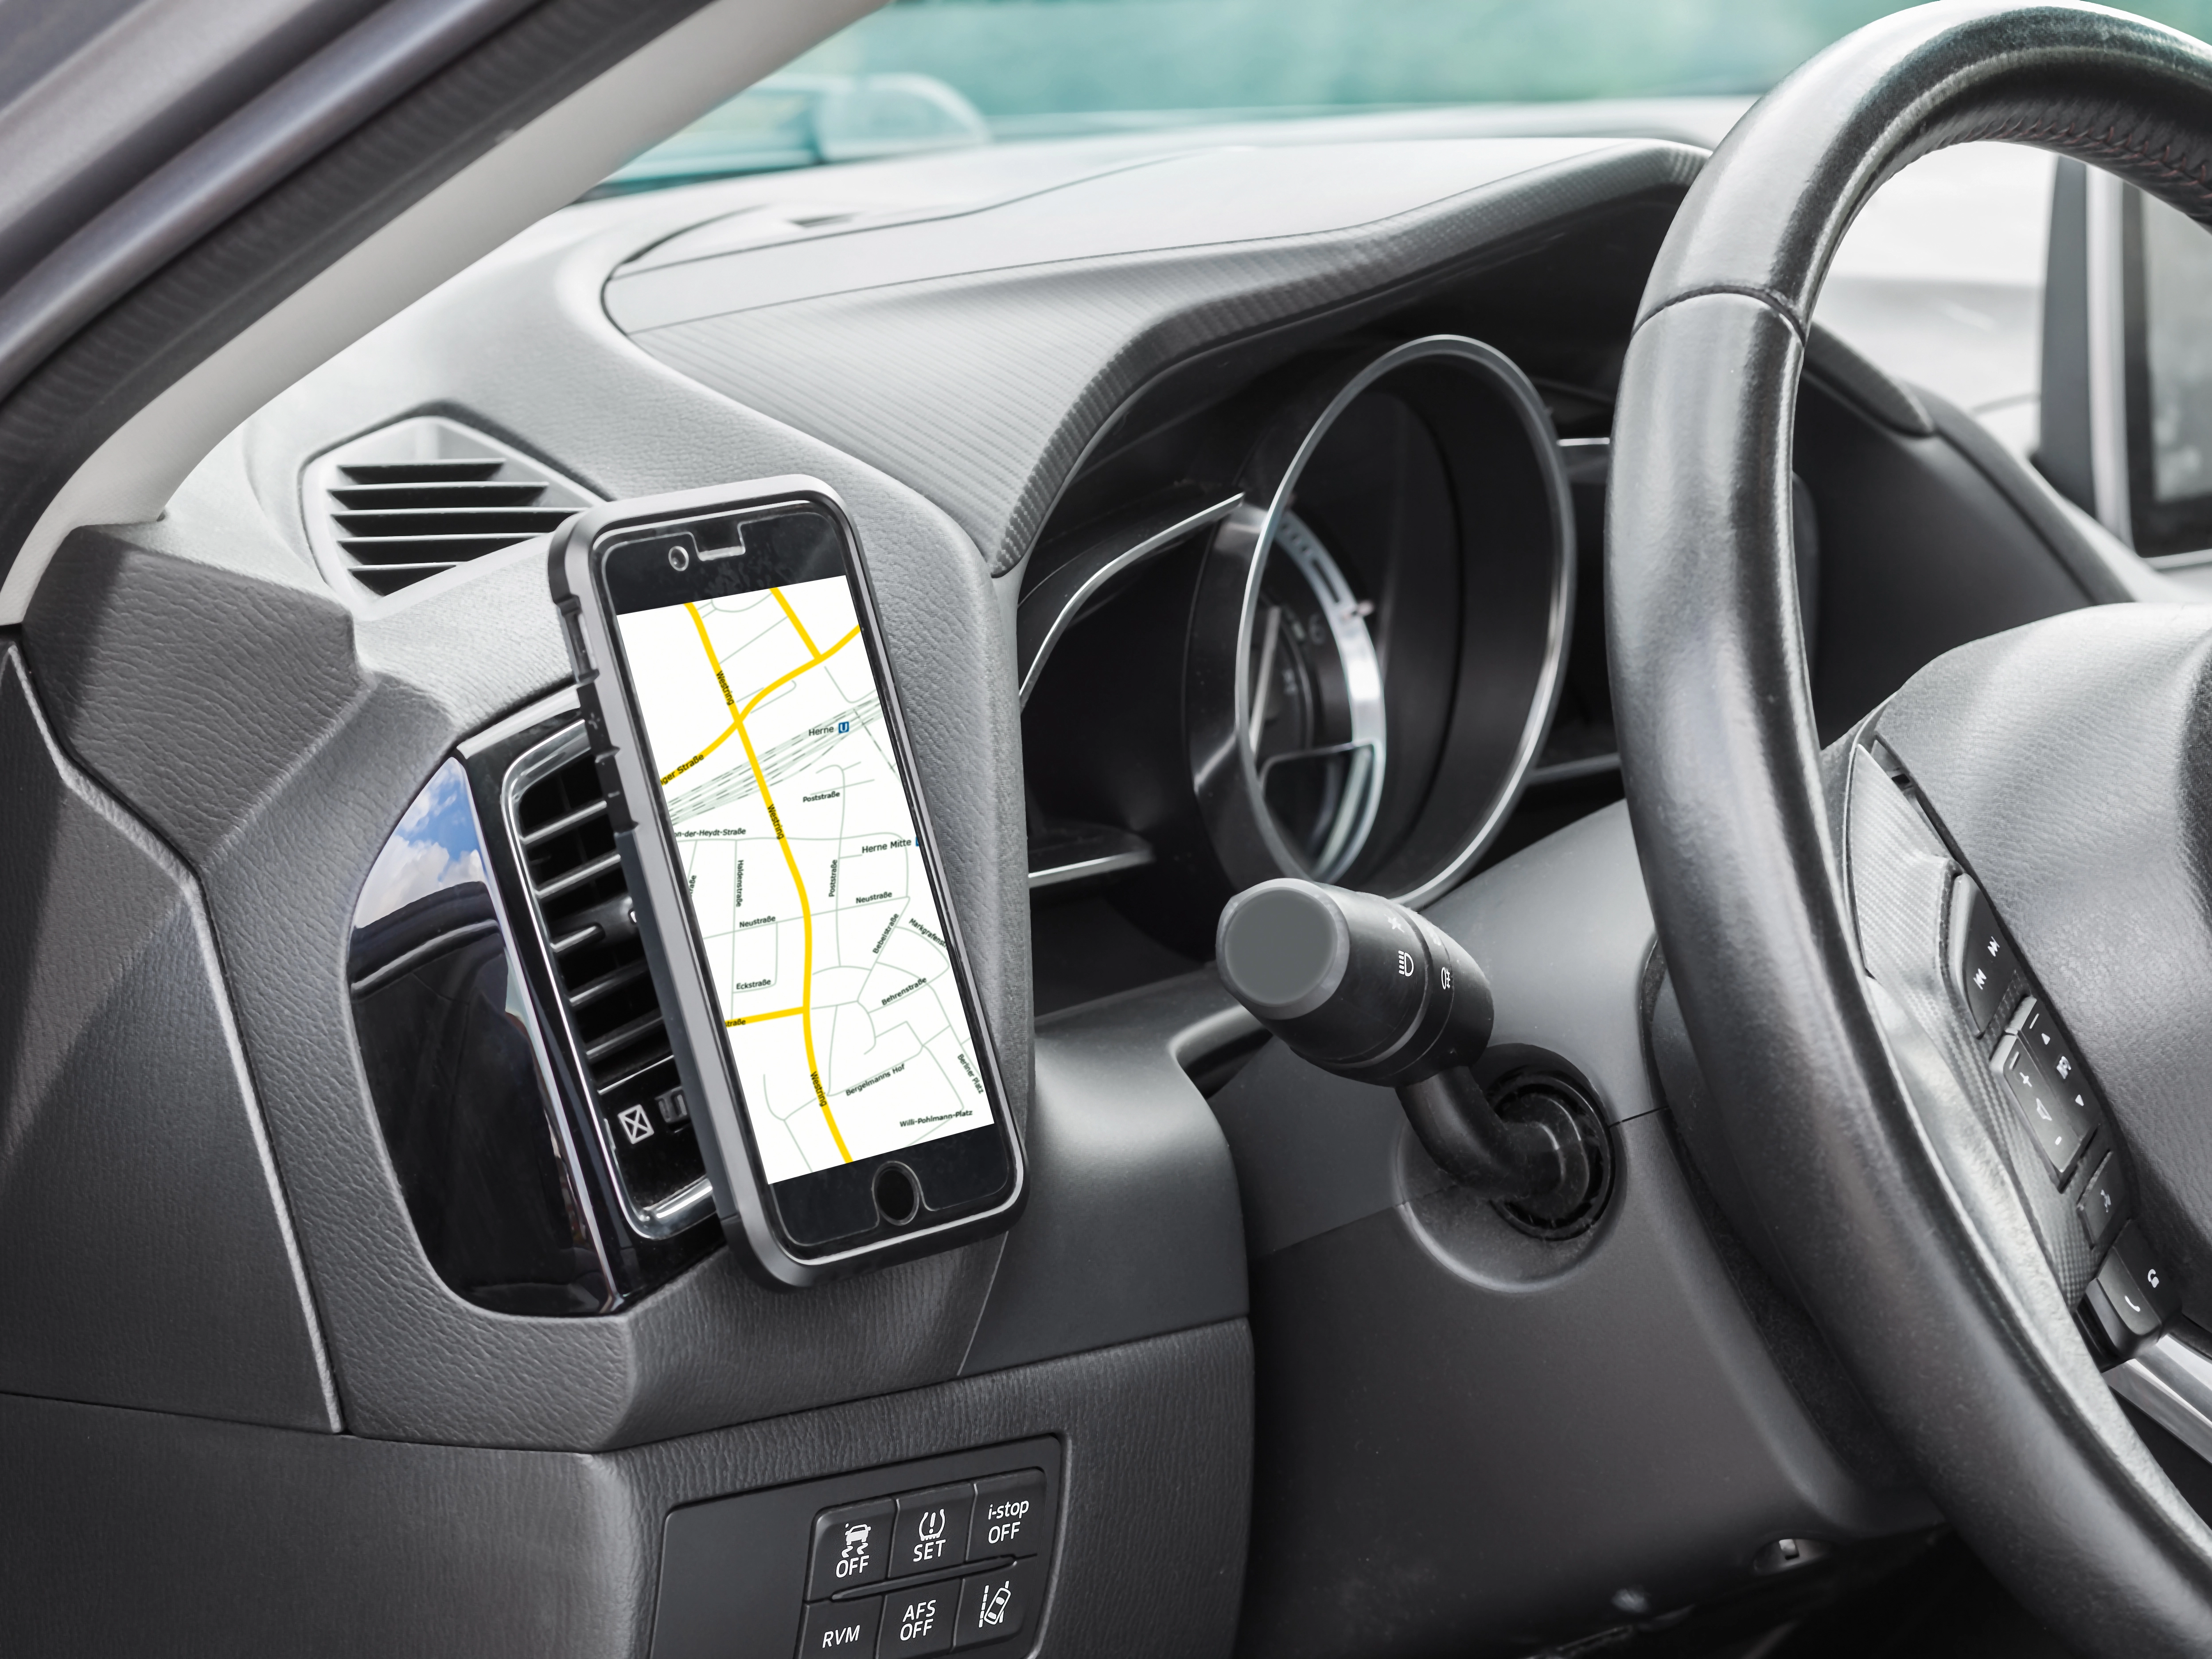 OBI Magnet-Smartphone-Halter für's Auto kaufen bei OBI